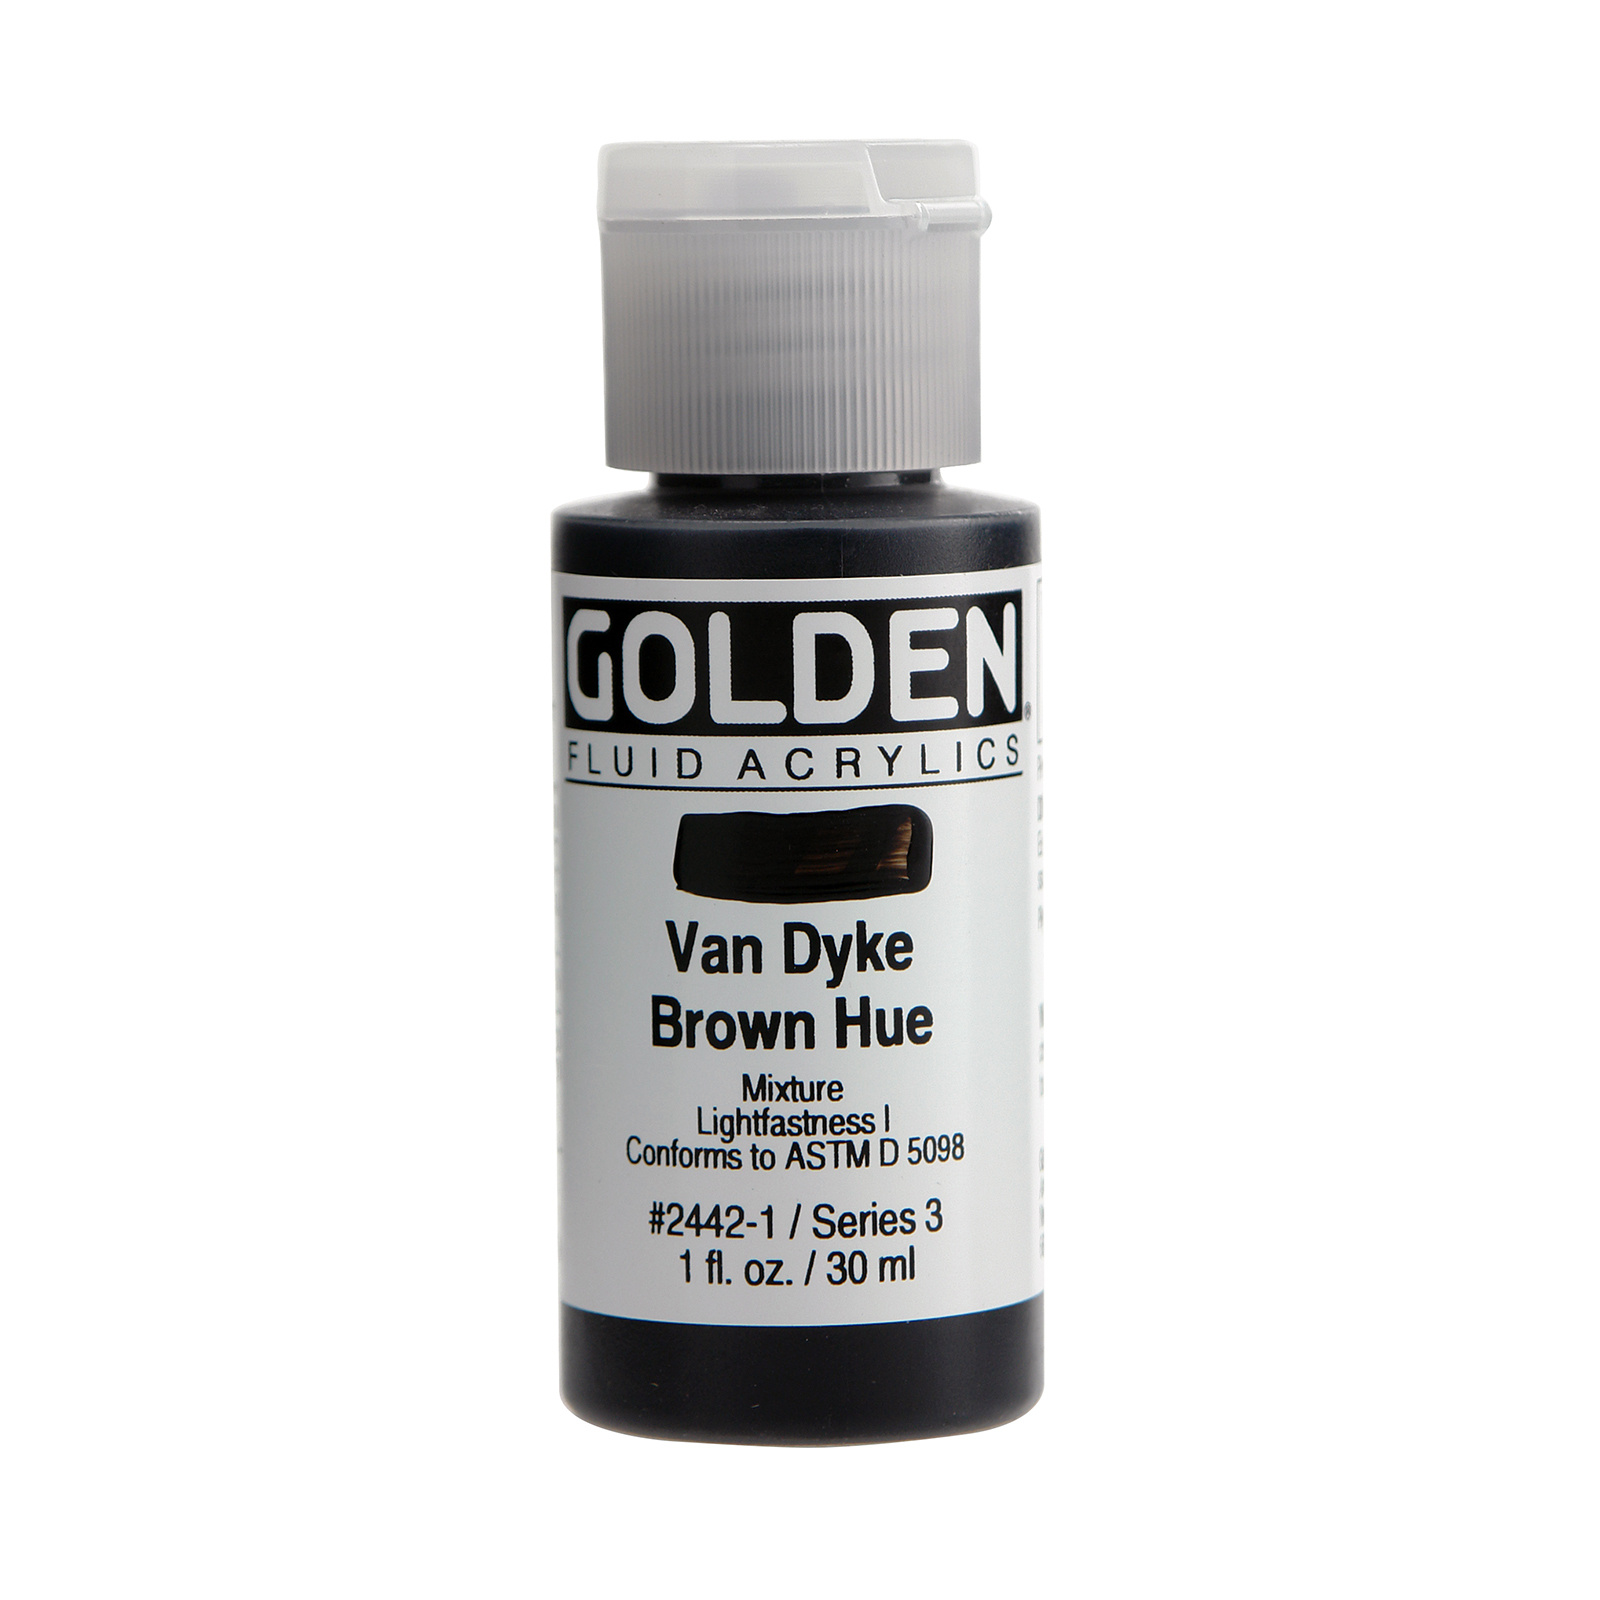 Golden Fluid Acrylics, 1 oz. Bottles, Van Dyke Brown